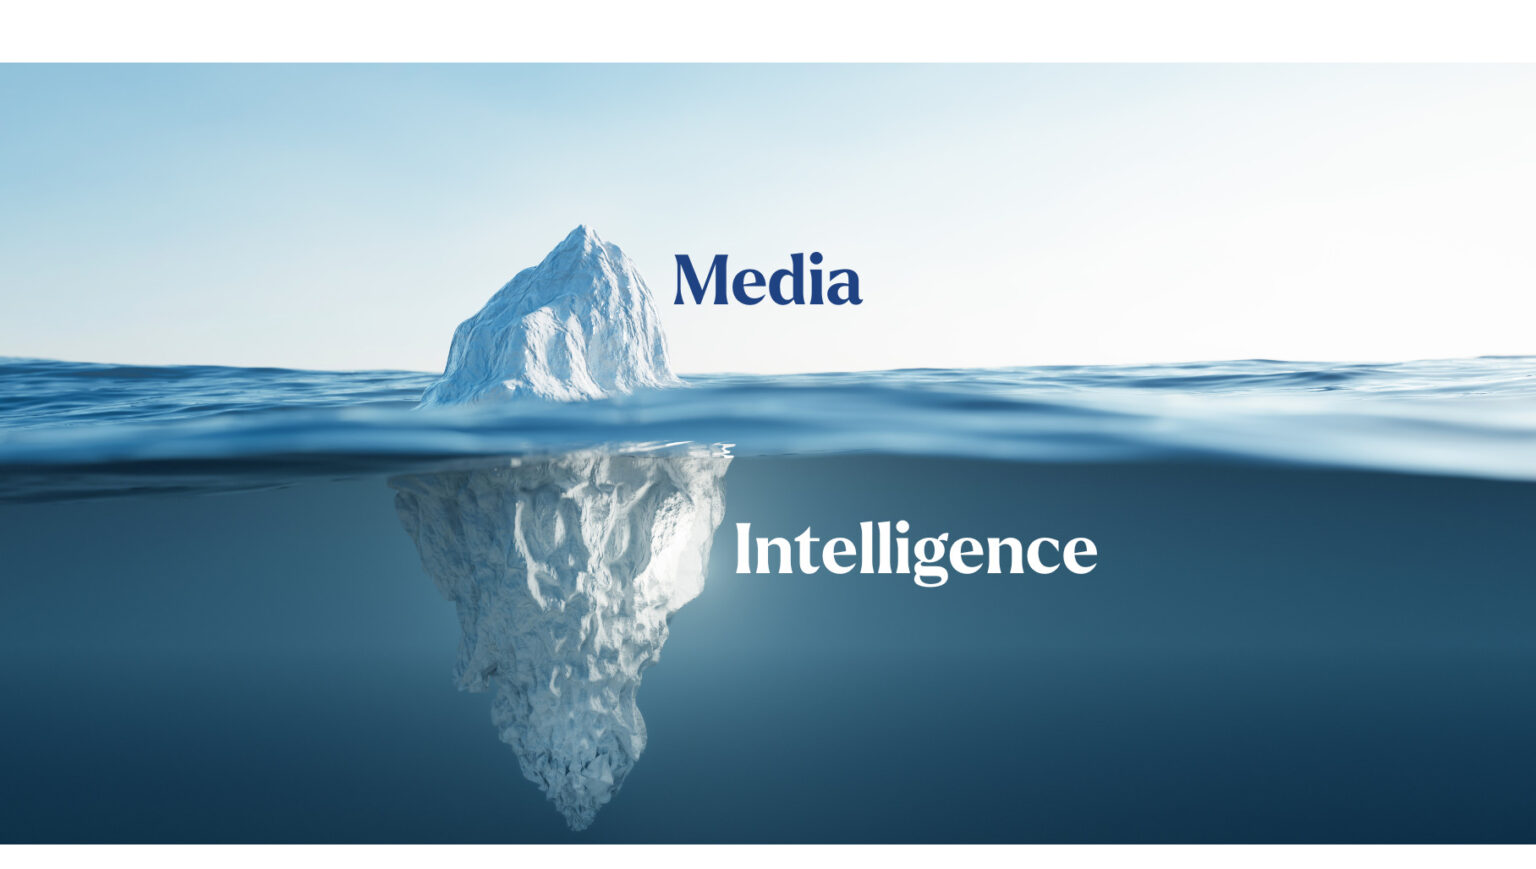 5 gangbare misvattingen over Media Intelligence